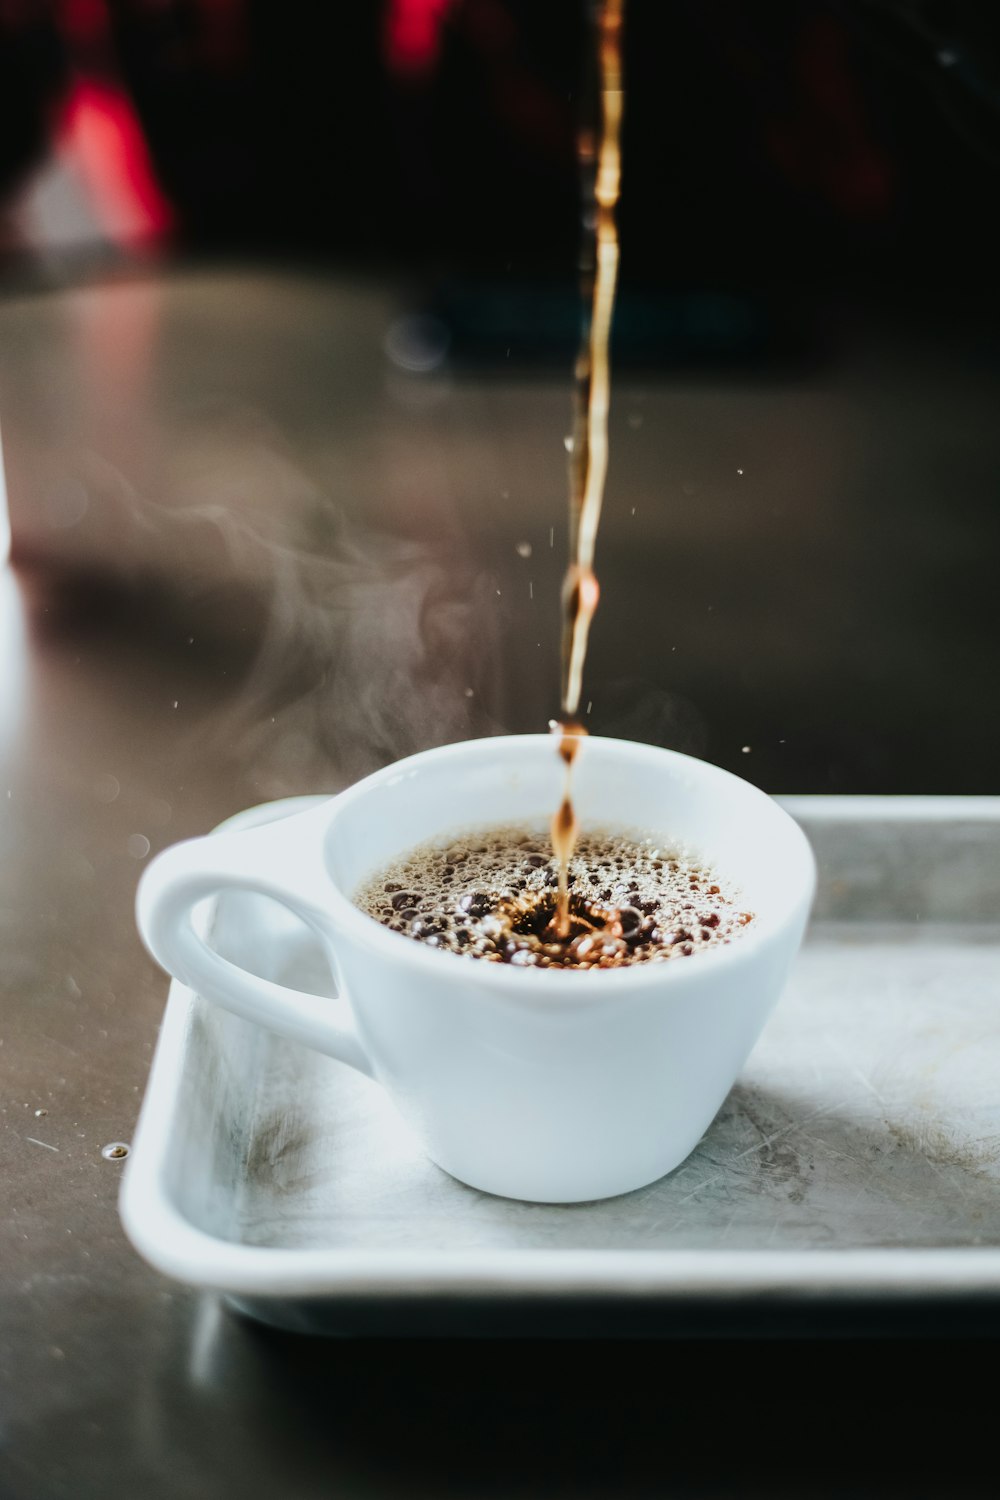 Zeitrafferfotografie von Kaffee auf Tasse